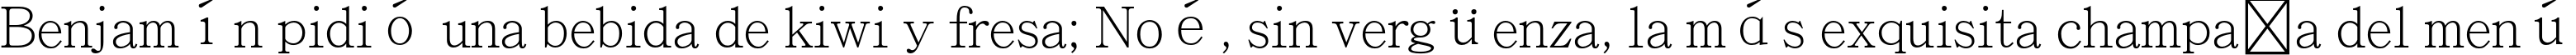 Пример написания шрифтом Adobe Ming Std L текста на испанском